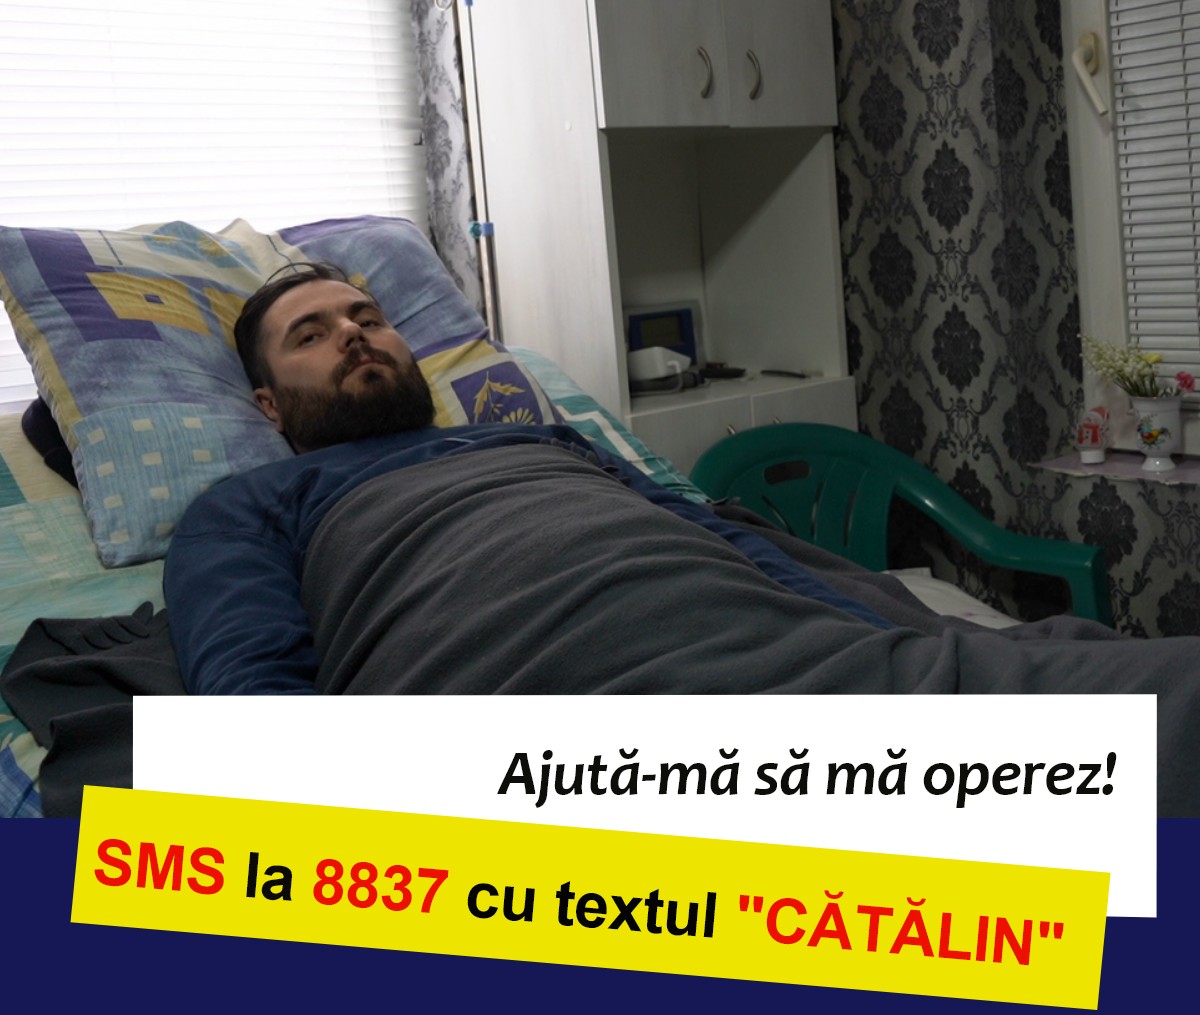 Catalin este paralizat complet la pat si are nevoie de transplant de celule stem. Donează 2 Euro prin SMS pentru Cătălin!